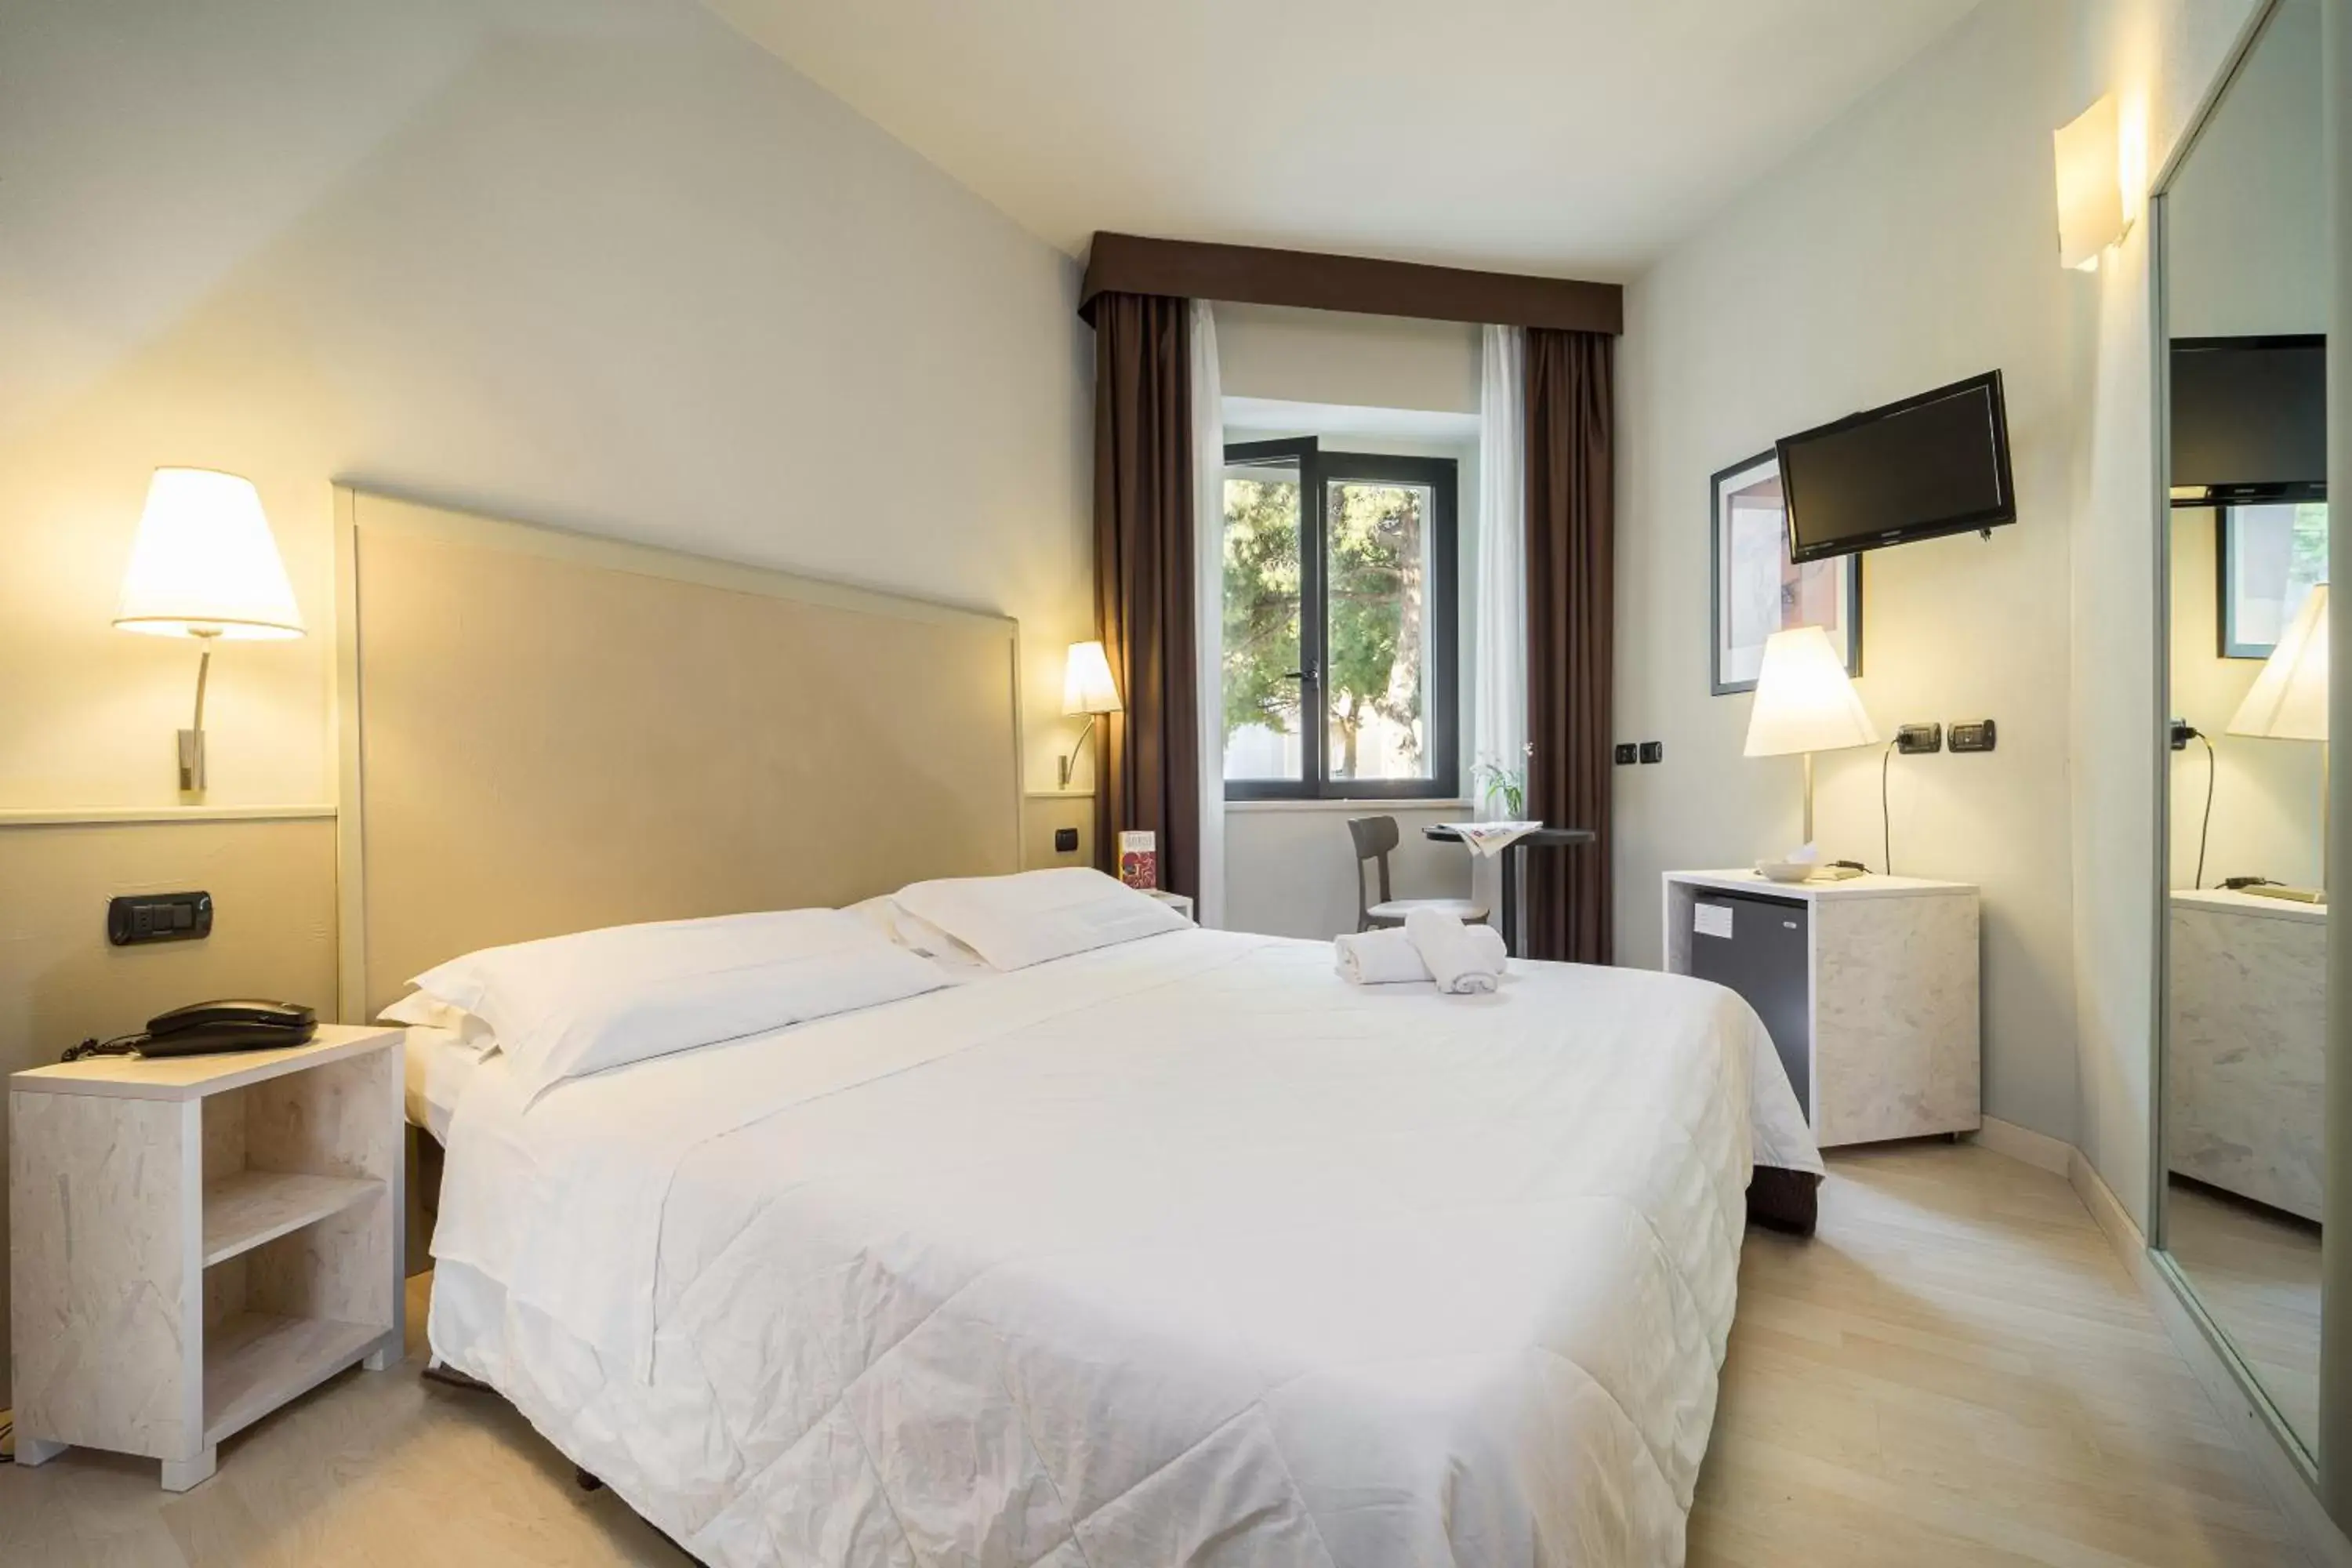 Double Room in Hotel Corallo Rimini